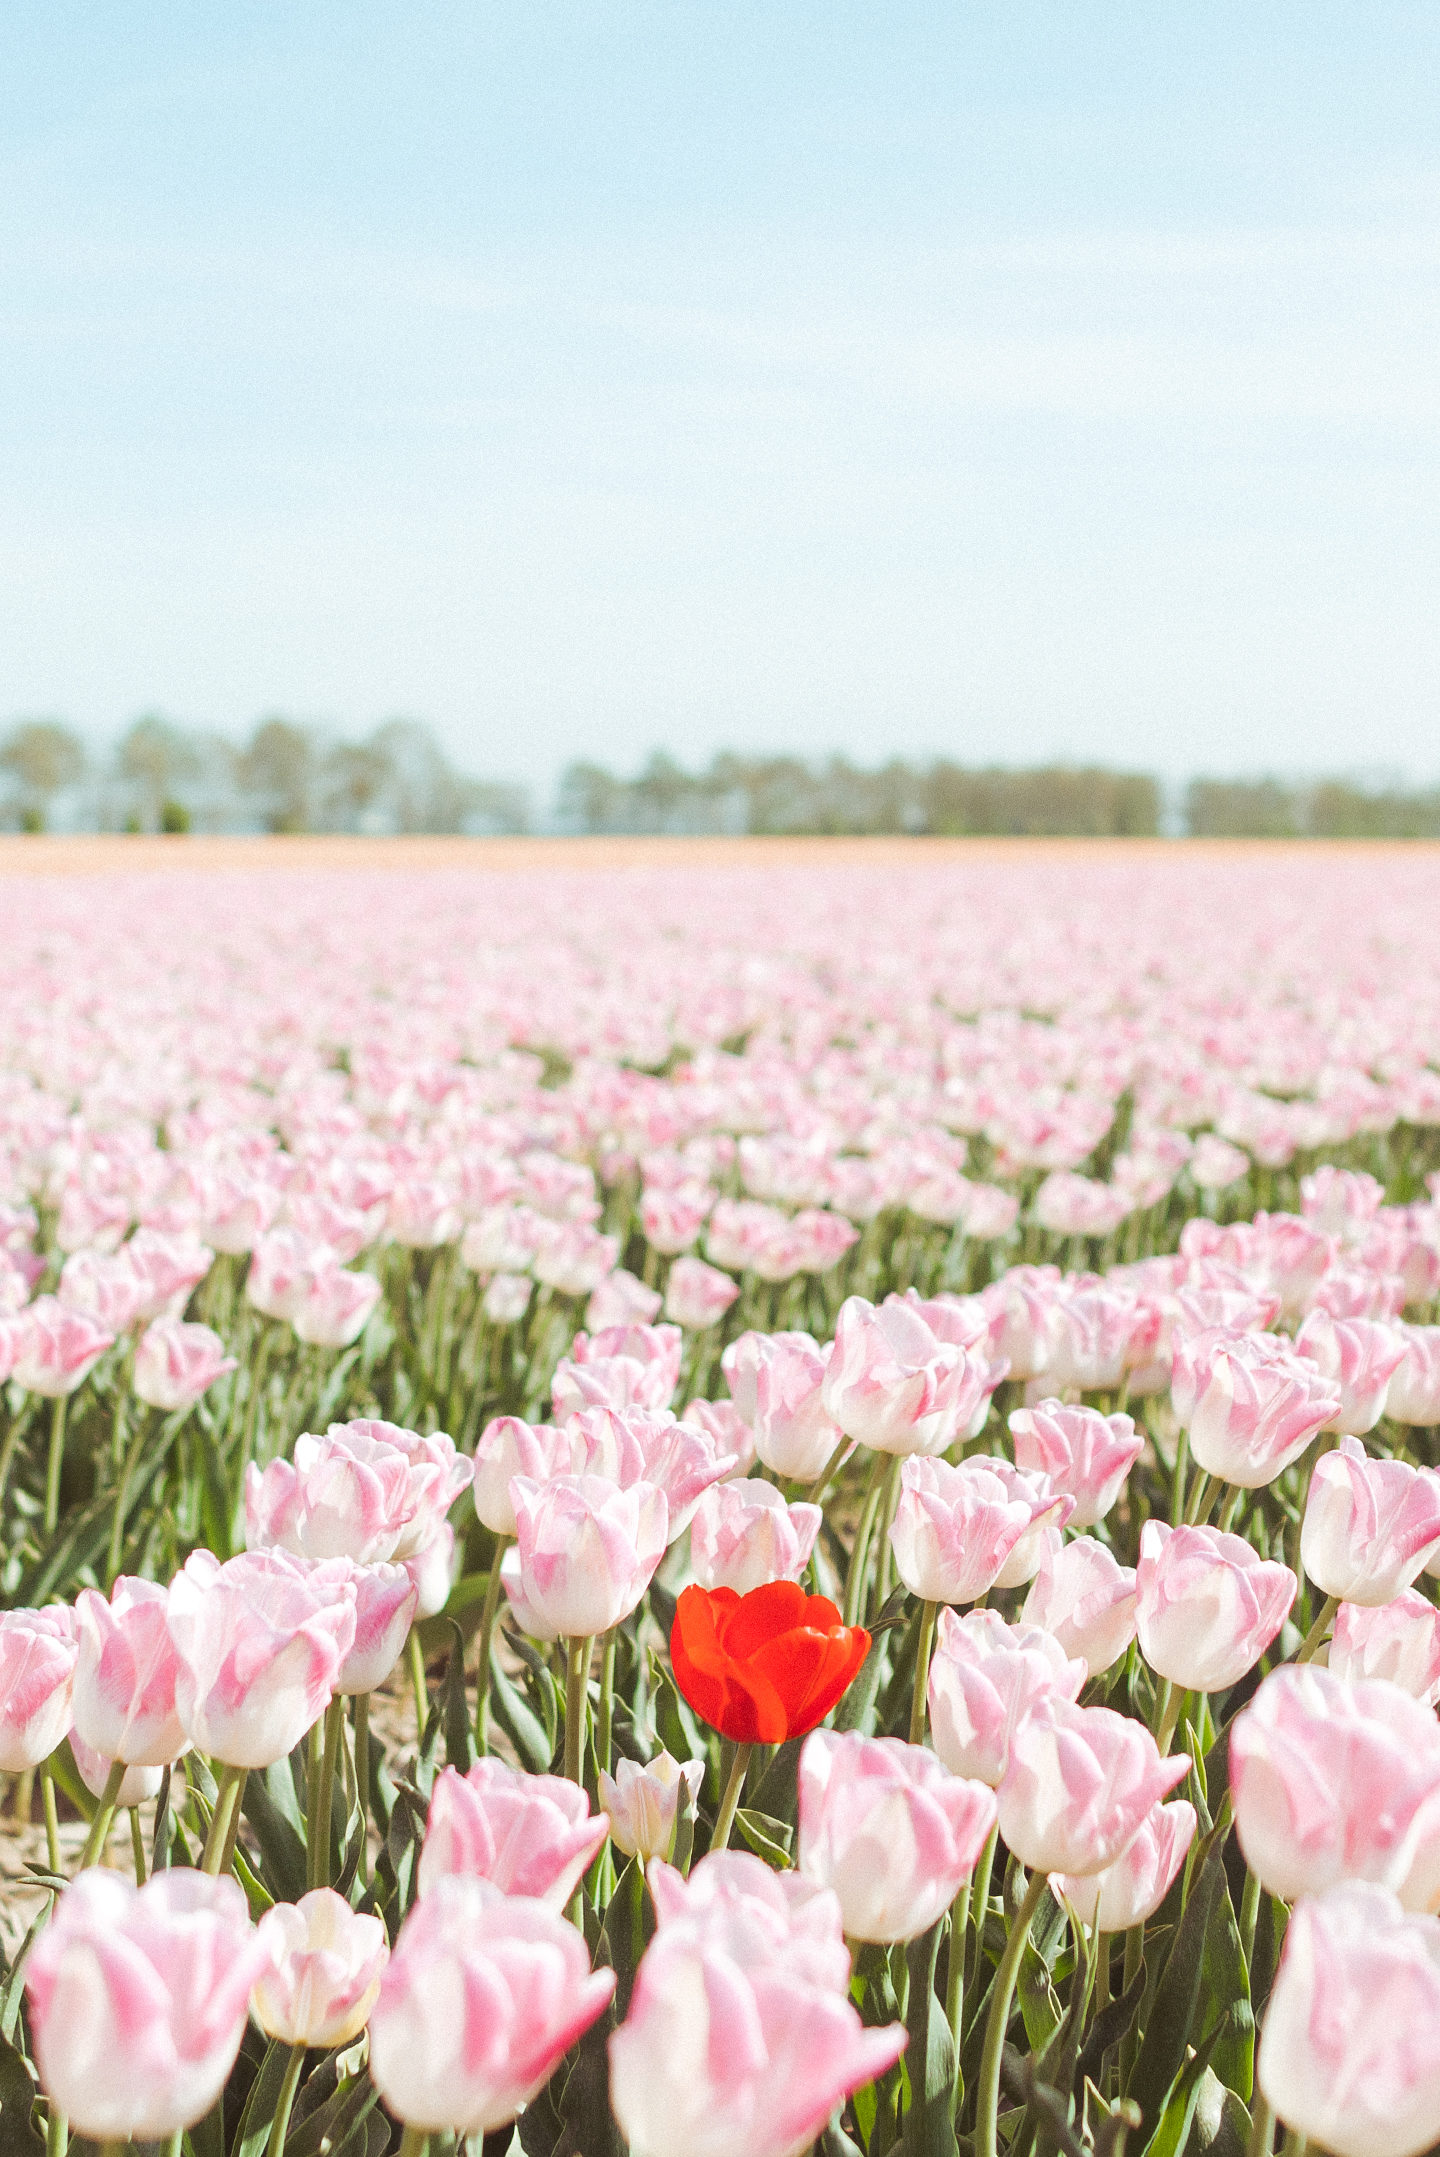 Bollenvelden Nederland tulpen tulip field Holland